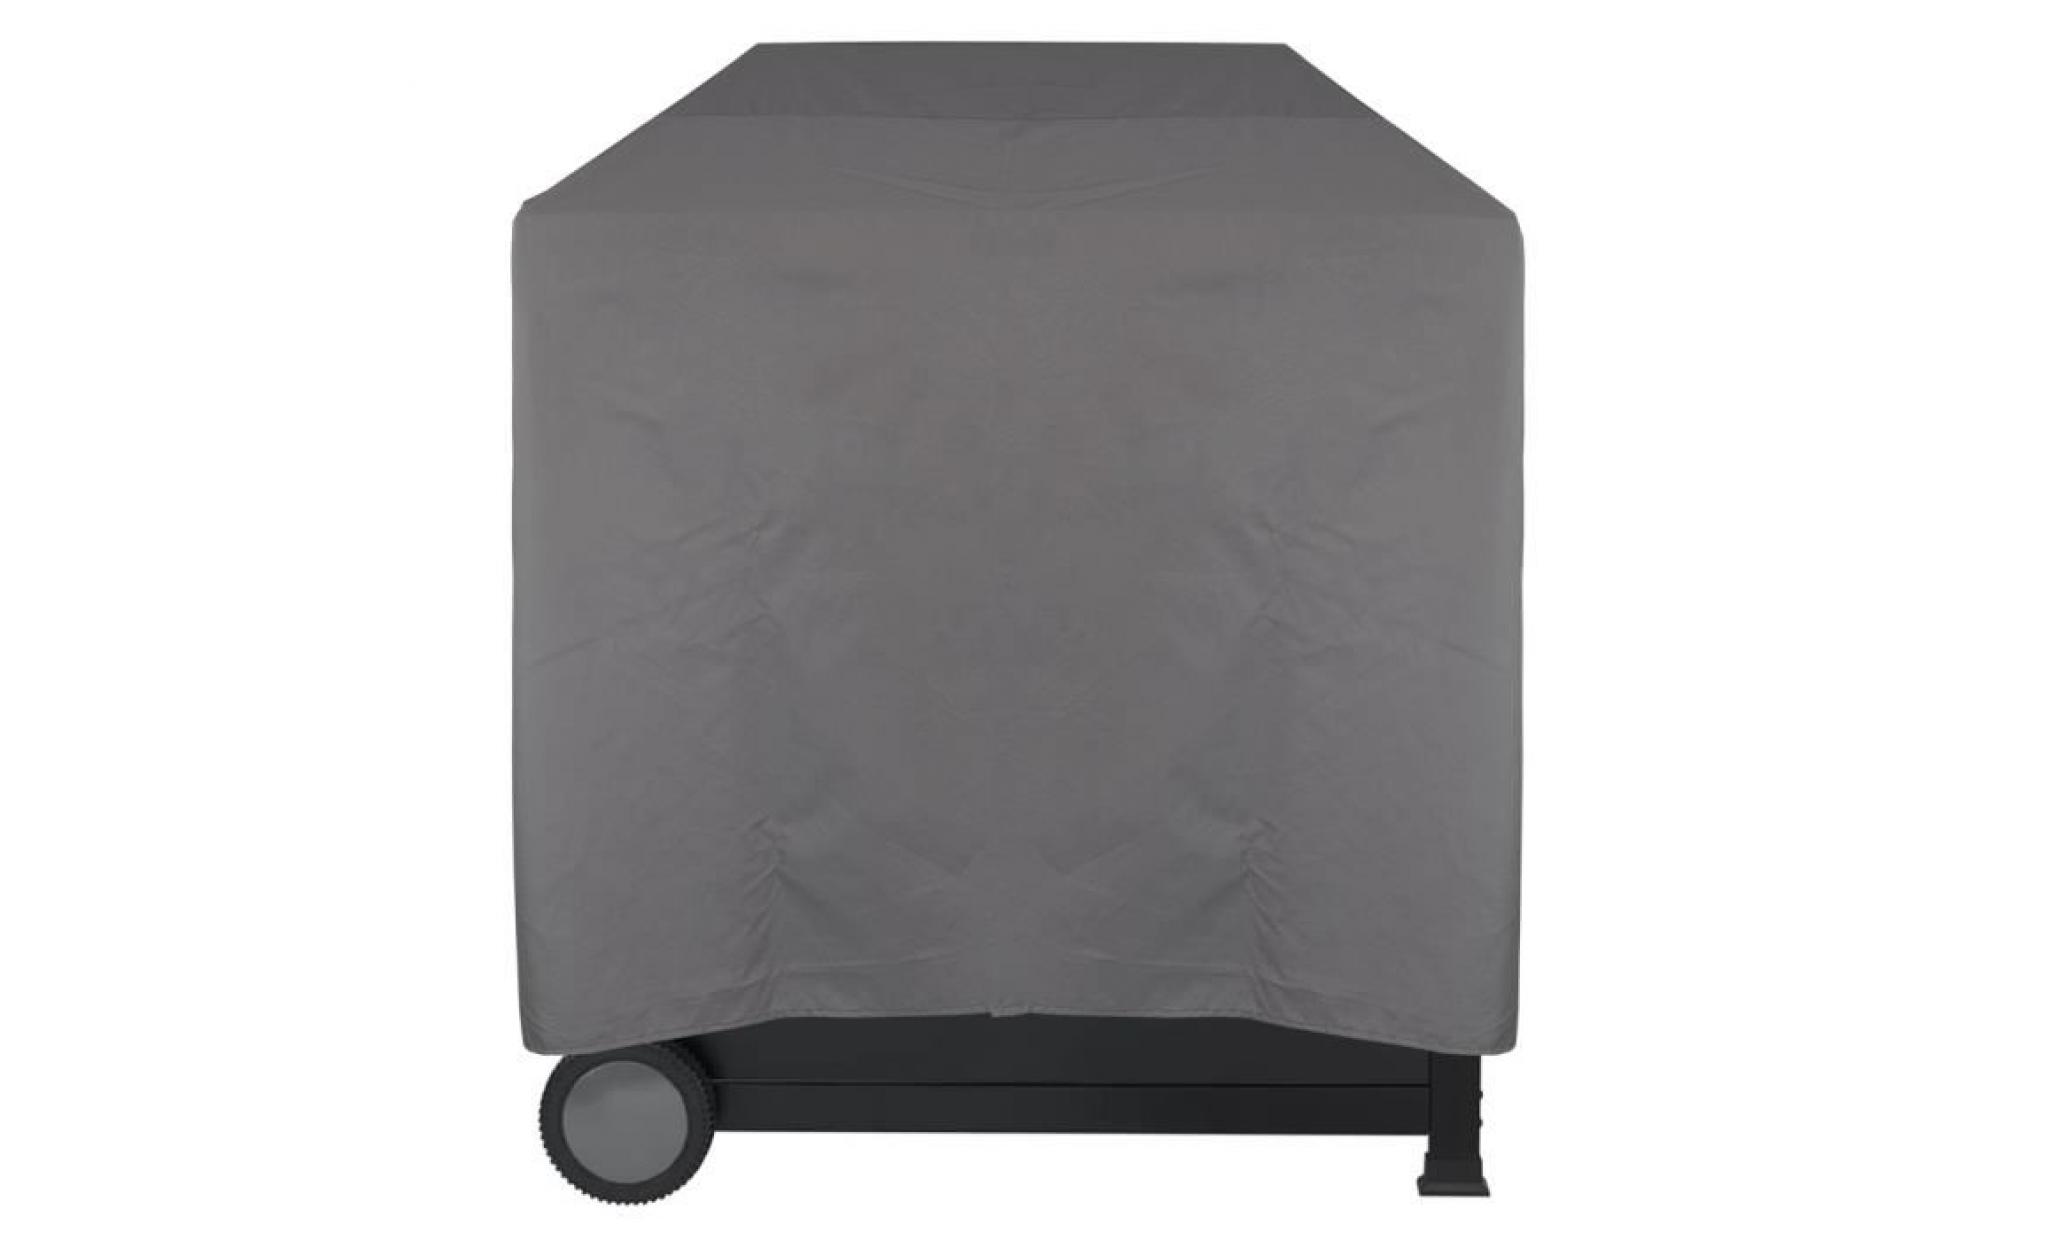 housse pour barbecue imperméable lounge gris, s 52 x 52 x 52 cm   protège contre la pluie, la saleté et les rayons du soleil